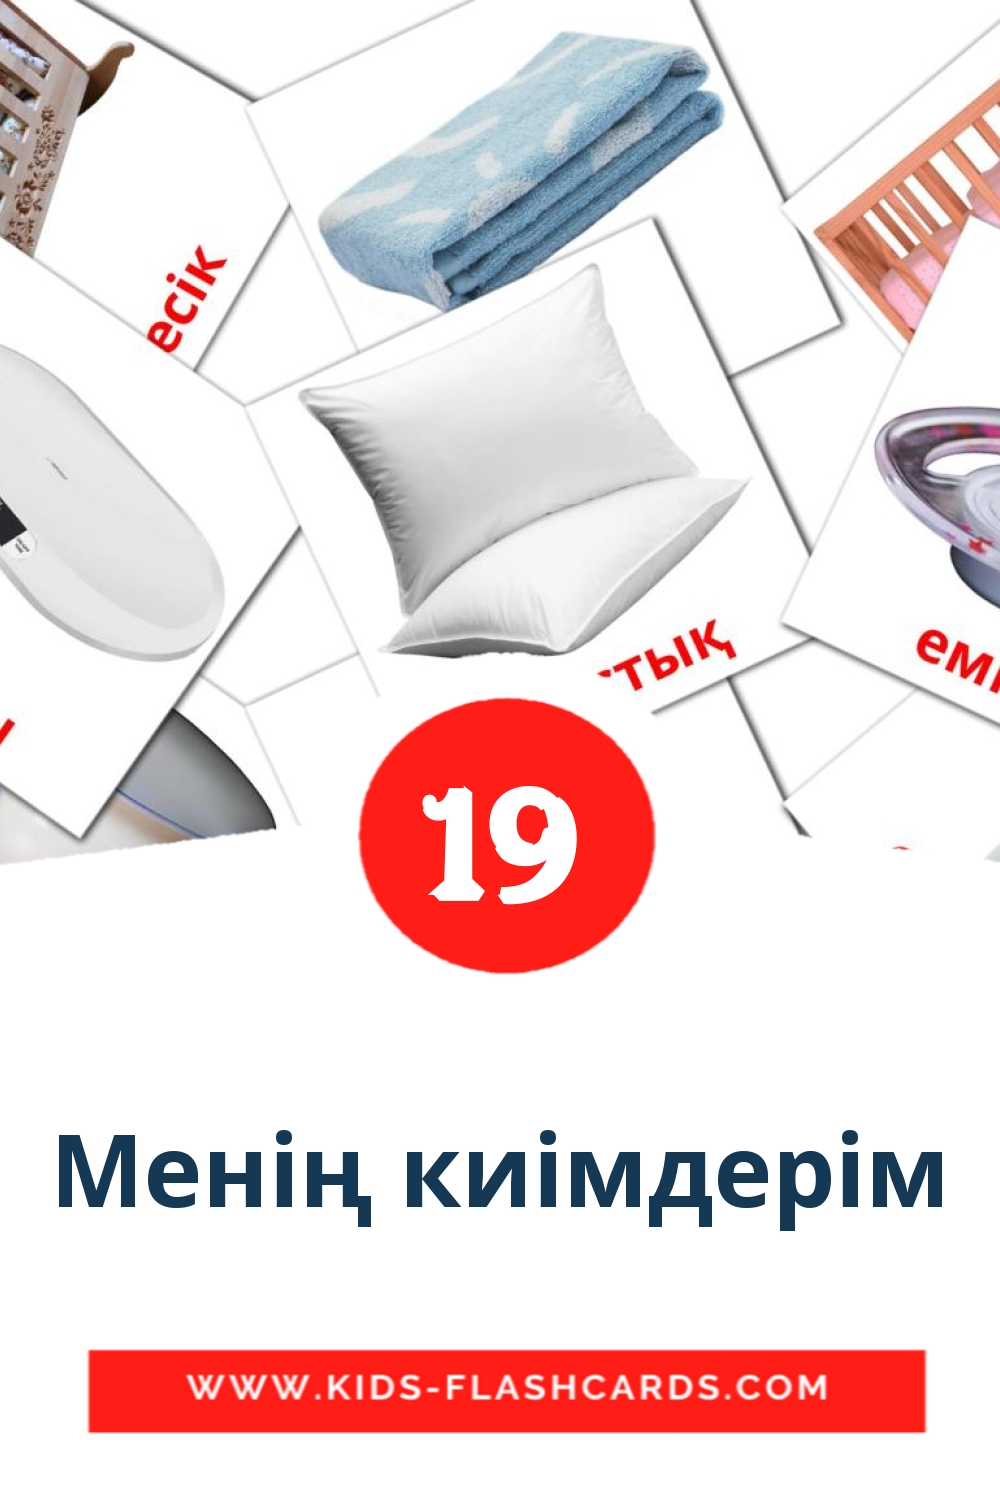 19 tarjetas didacticas de Менің киімдерім para el jardín de infancia en kazajo